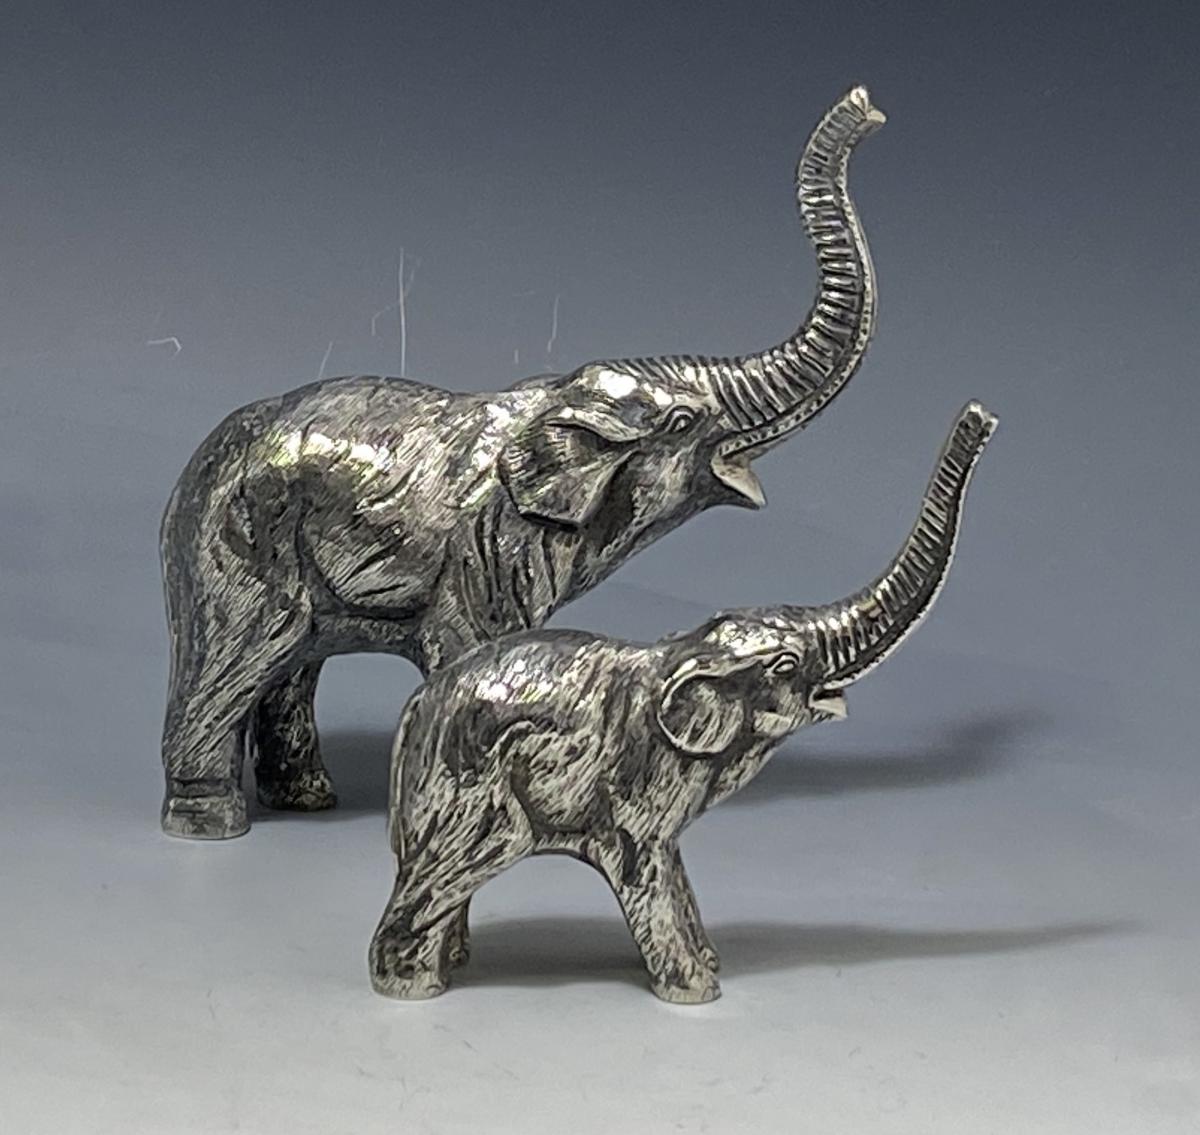 Sterling silver model elephants